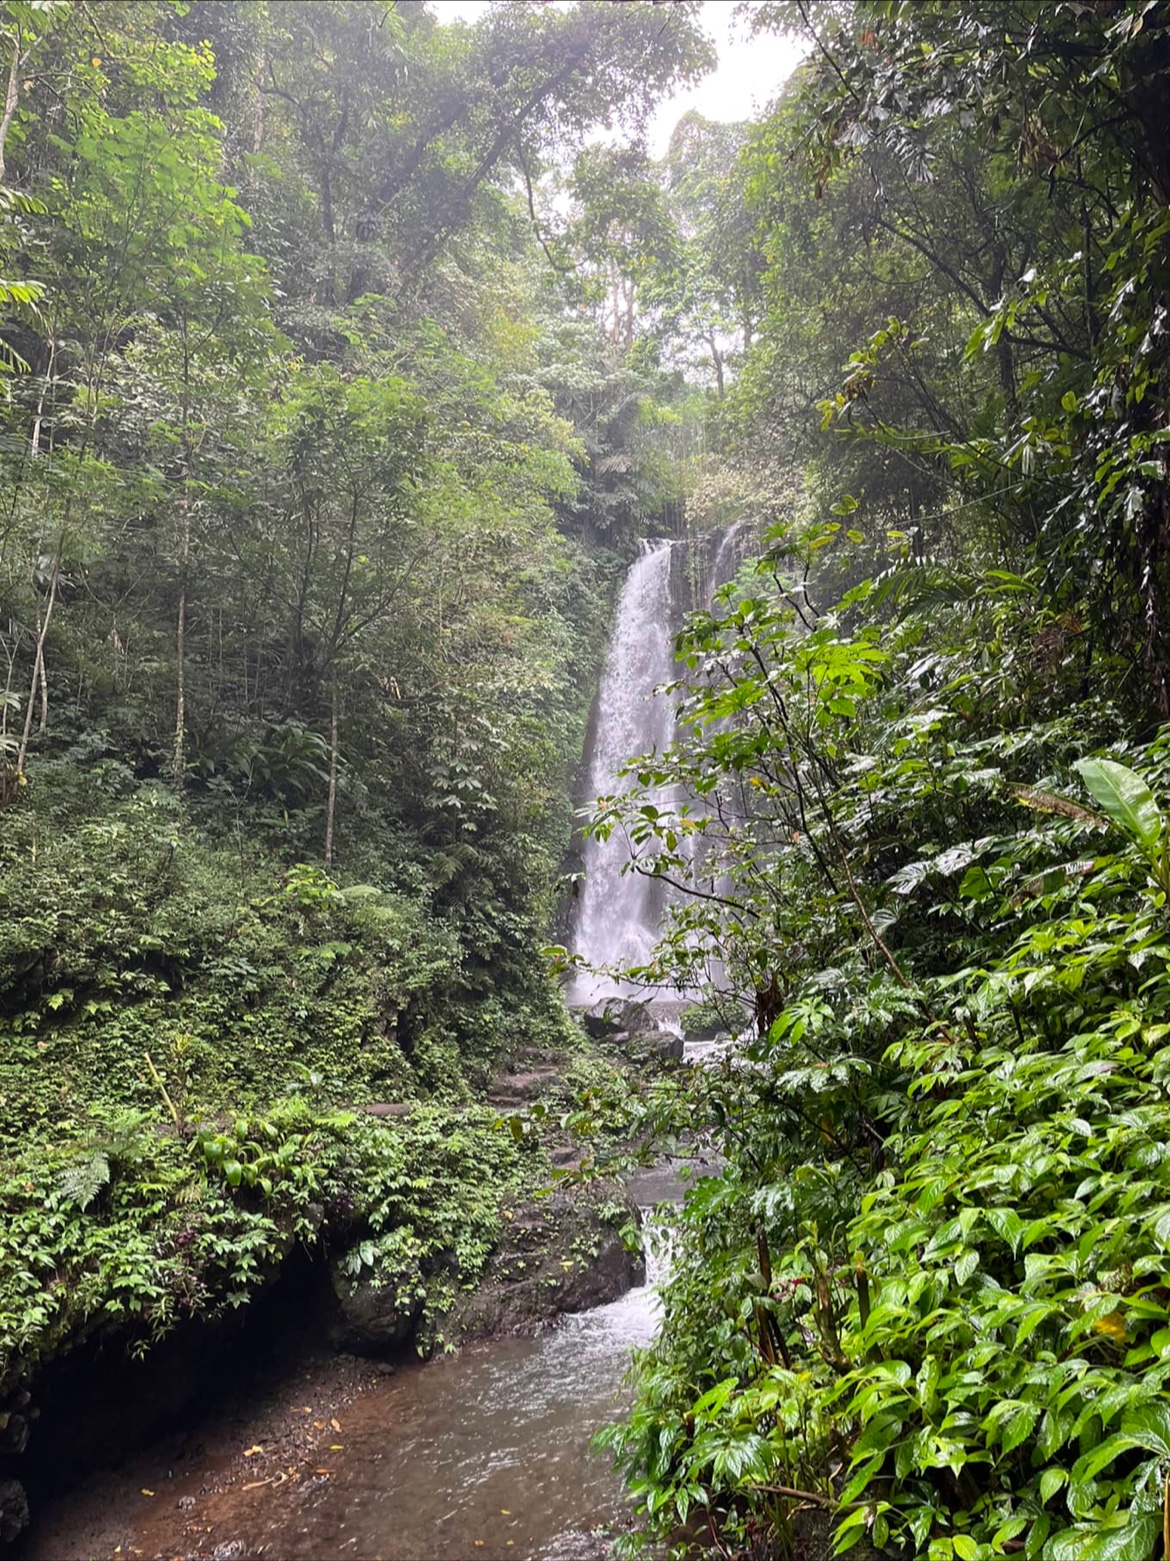 Labuhan Kebo Waterfalls